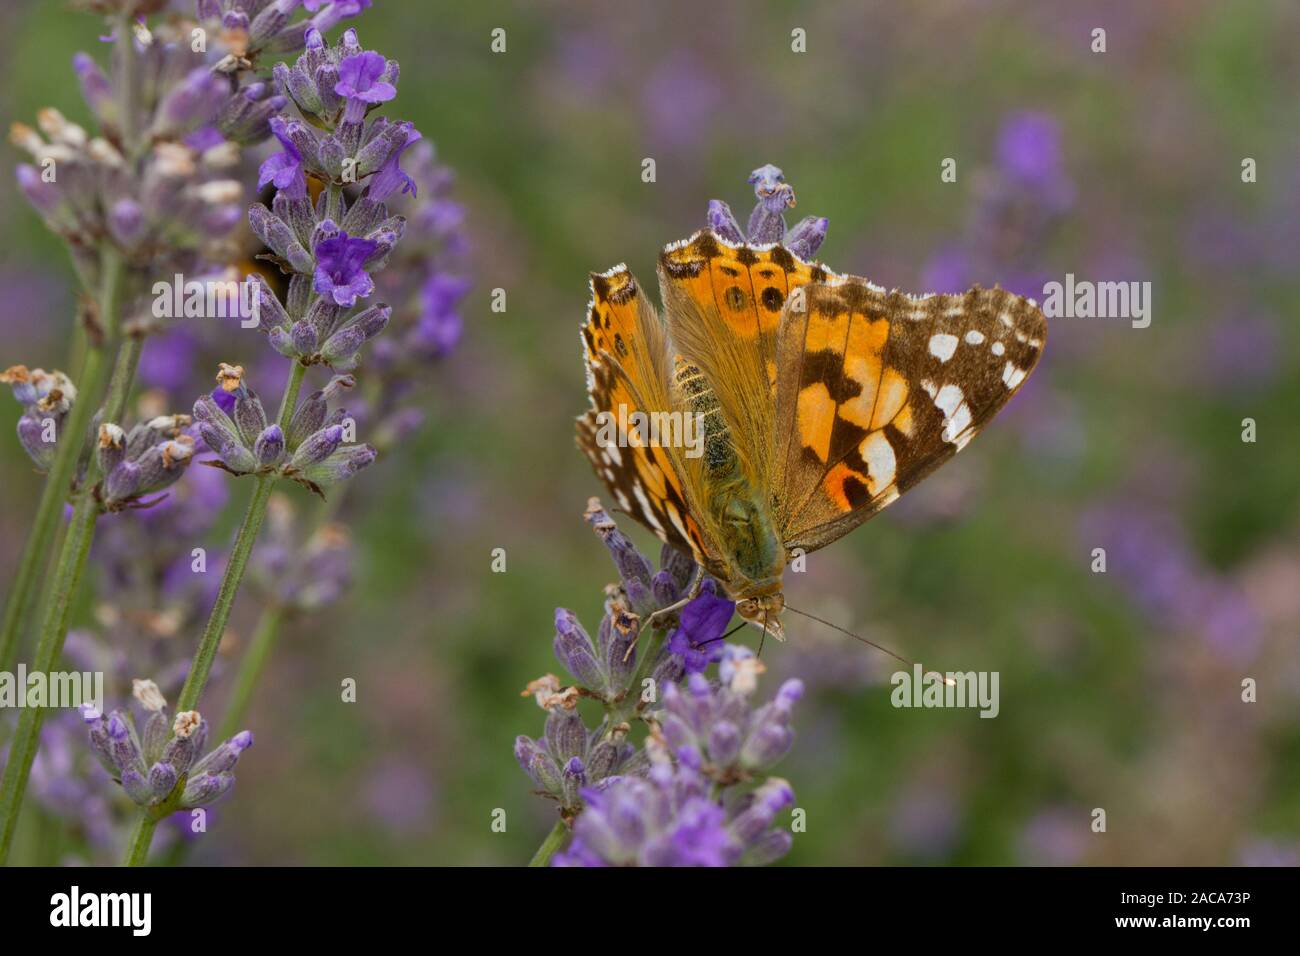 Distelfalter (Vanessa cardui) erwachsene Schmetterling Fütterung auf Lavendel im Garten. Carmarthenshire, Wales. August. Stockfoto